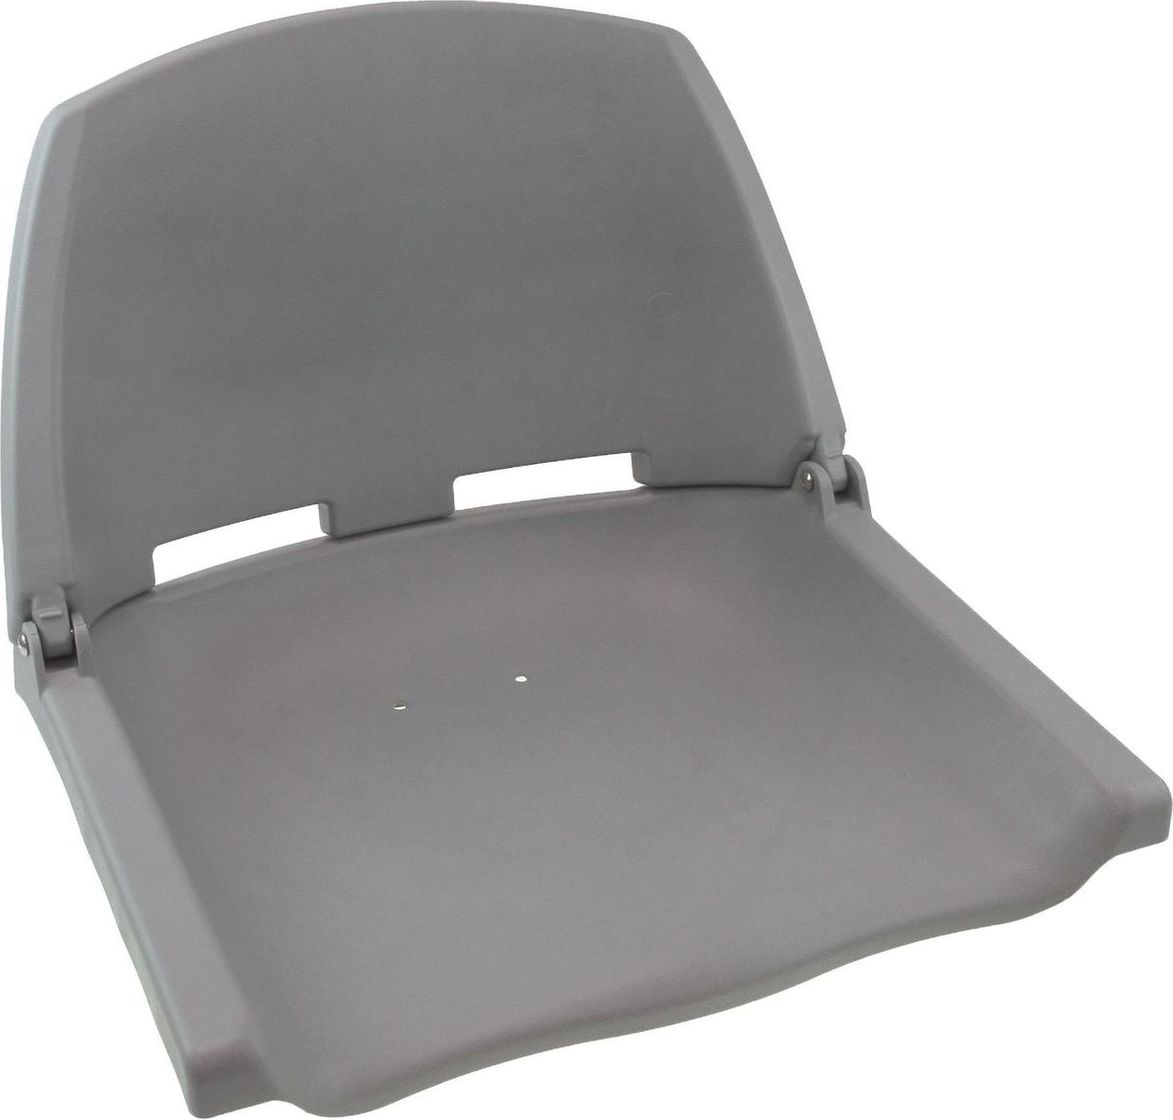 Кресло пластиковое серое (упаковка из 3 шт.) C12503G_pkg_3 кранец easterner надувной 510х140 белый упаковка из 18 шт c11752 pkg 18